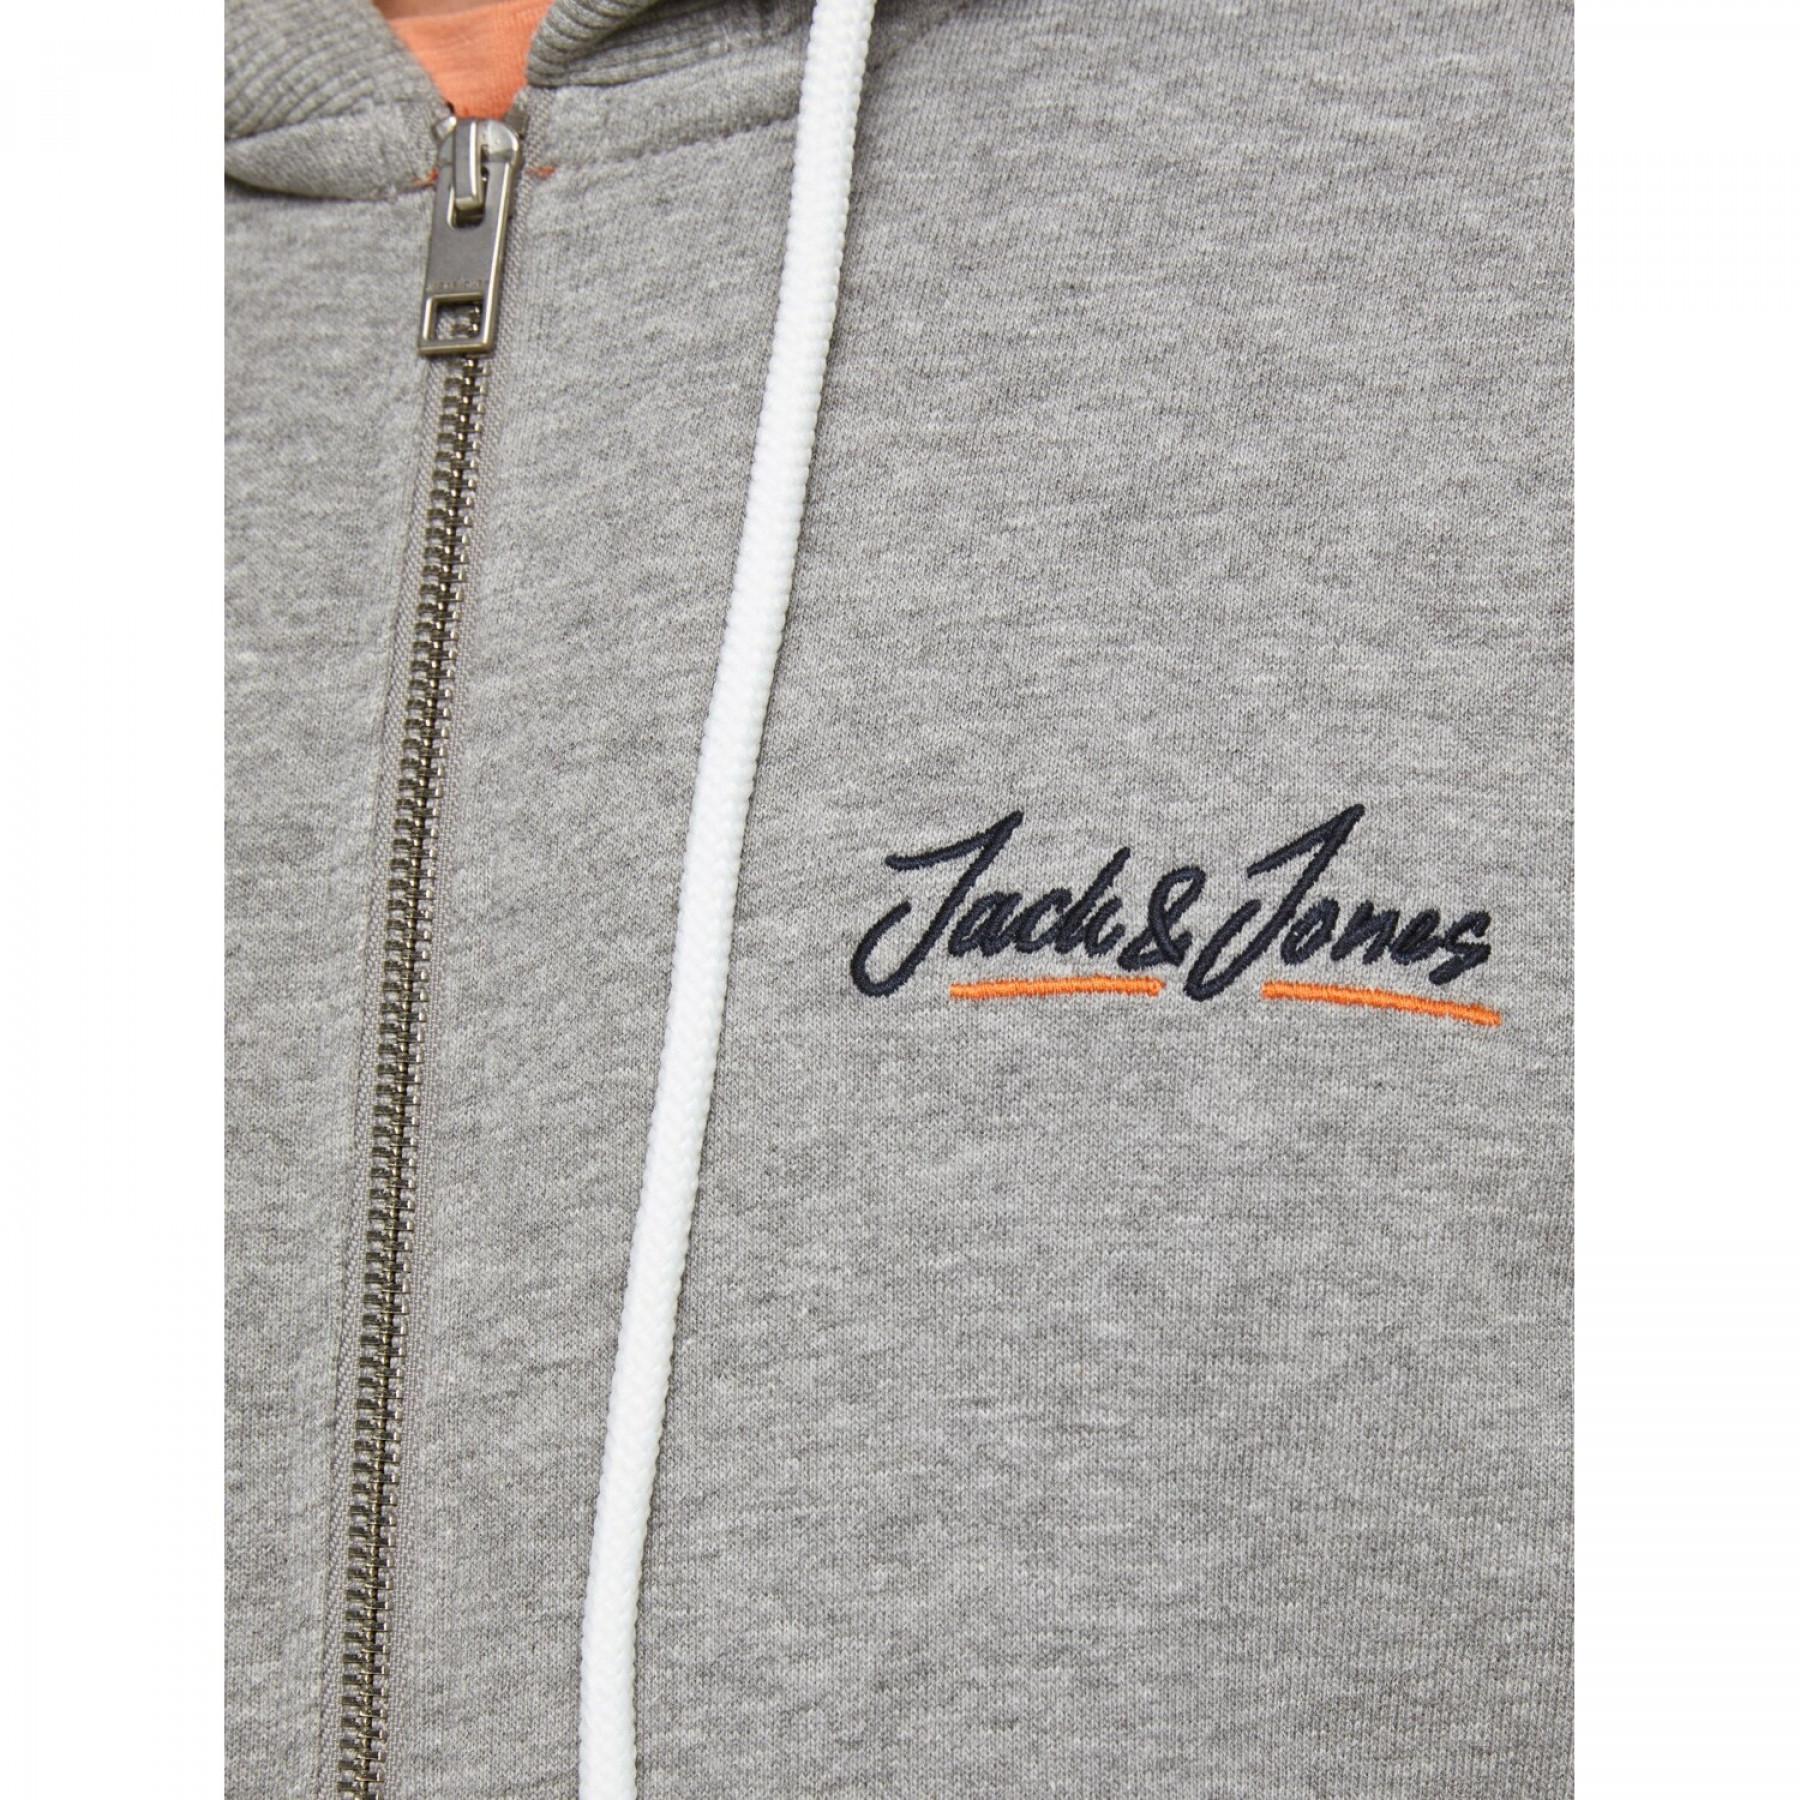 Sweatshirt Reißverschluss Jack & Jones tons